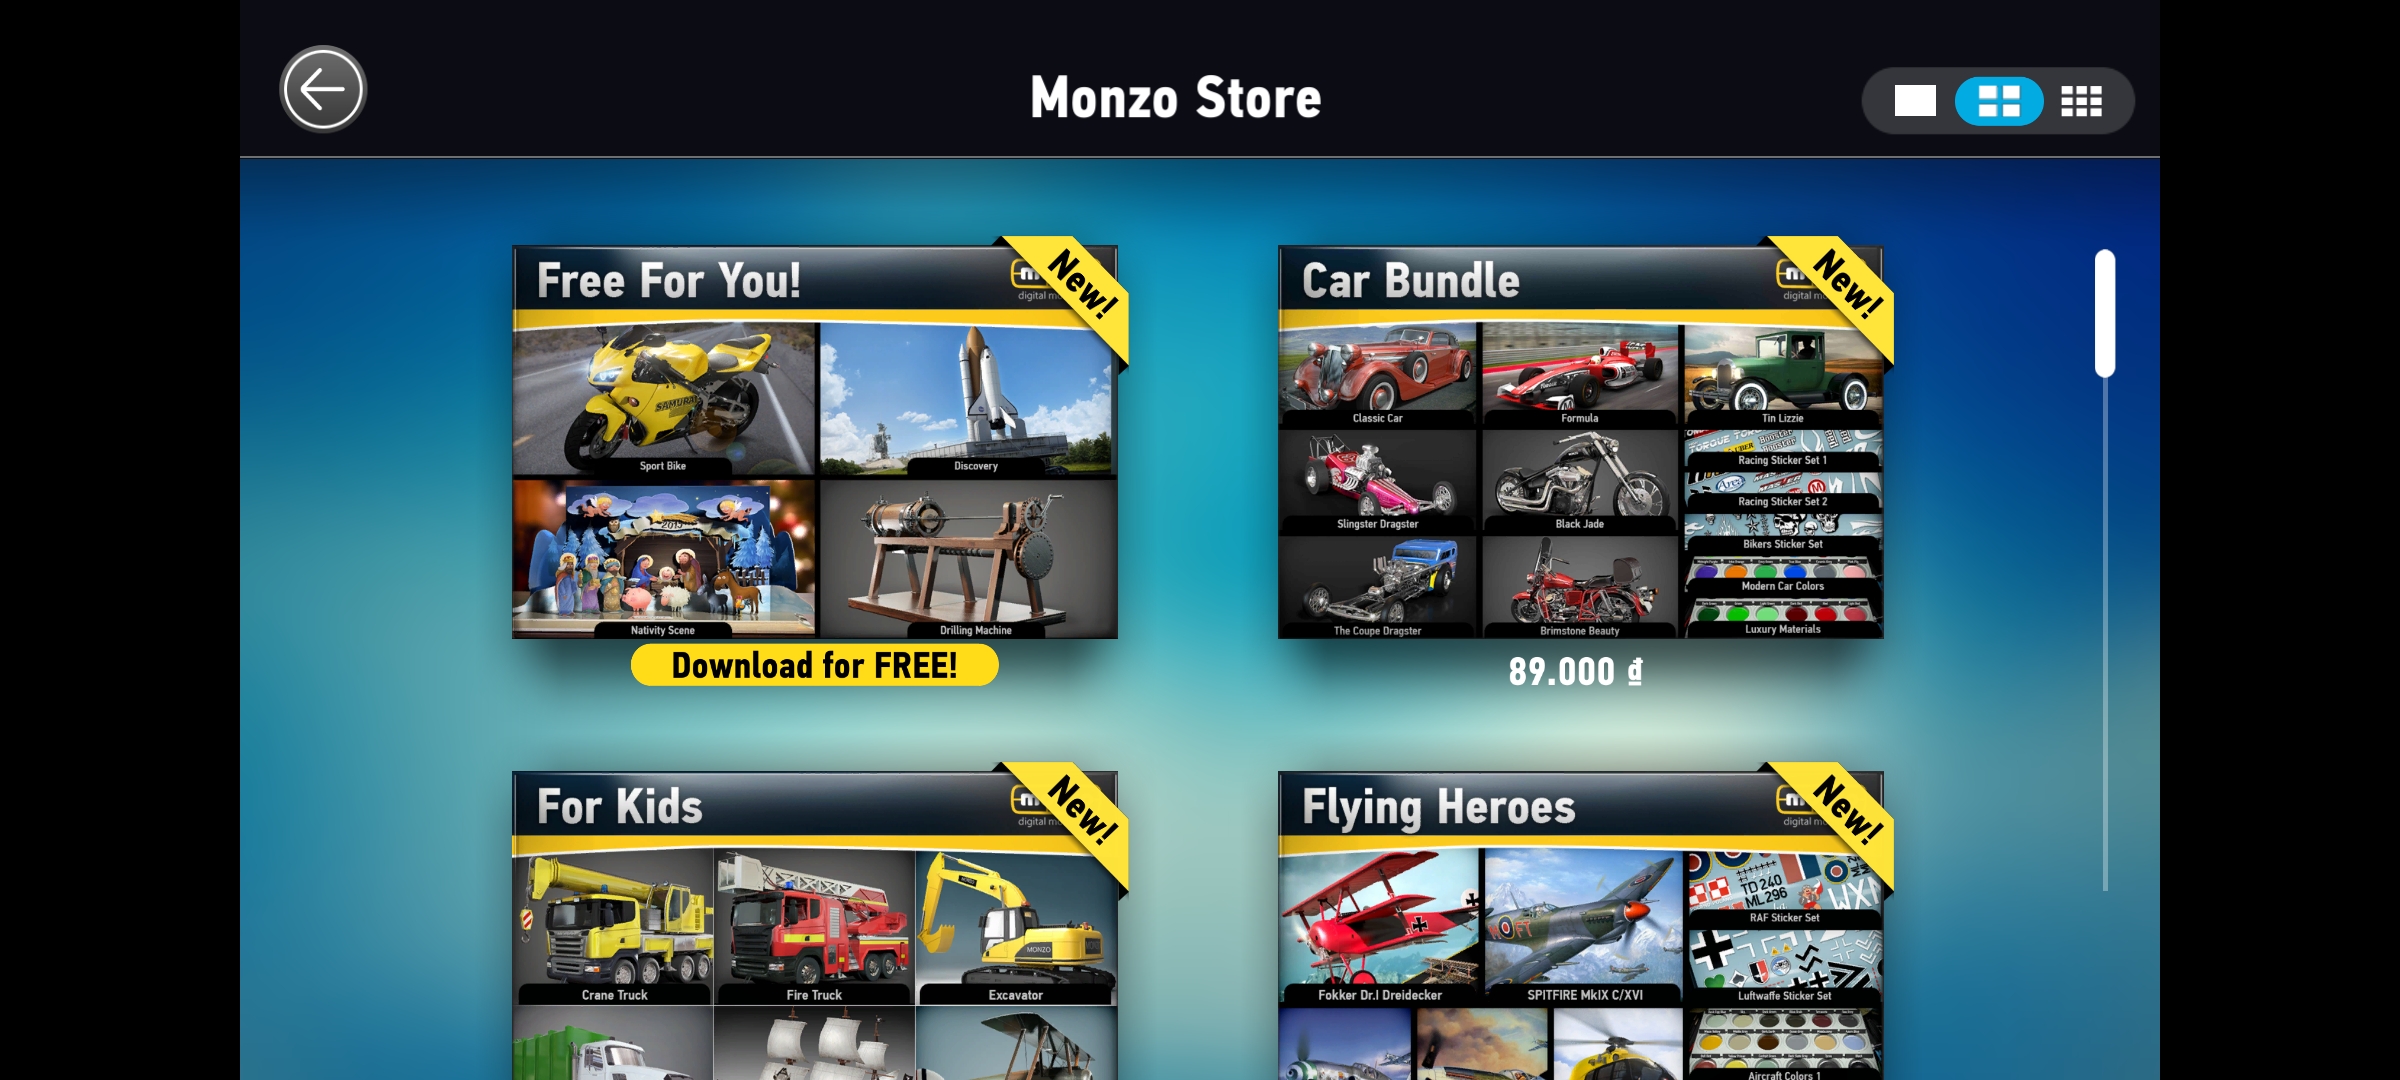 MONZO - Digital Model Builder Game GIẢ LẬP LẮP RÁP MÔ HÌNH Y HỆT NGOÀI ĐỜI Cho Android